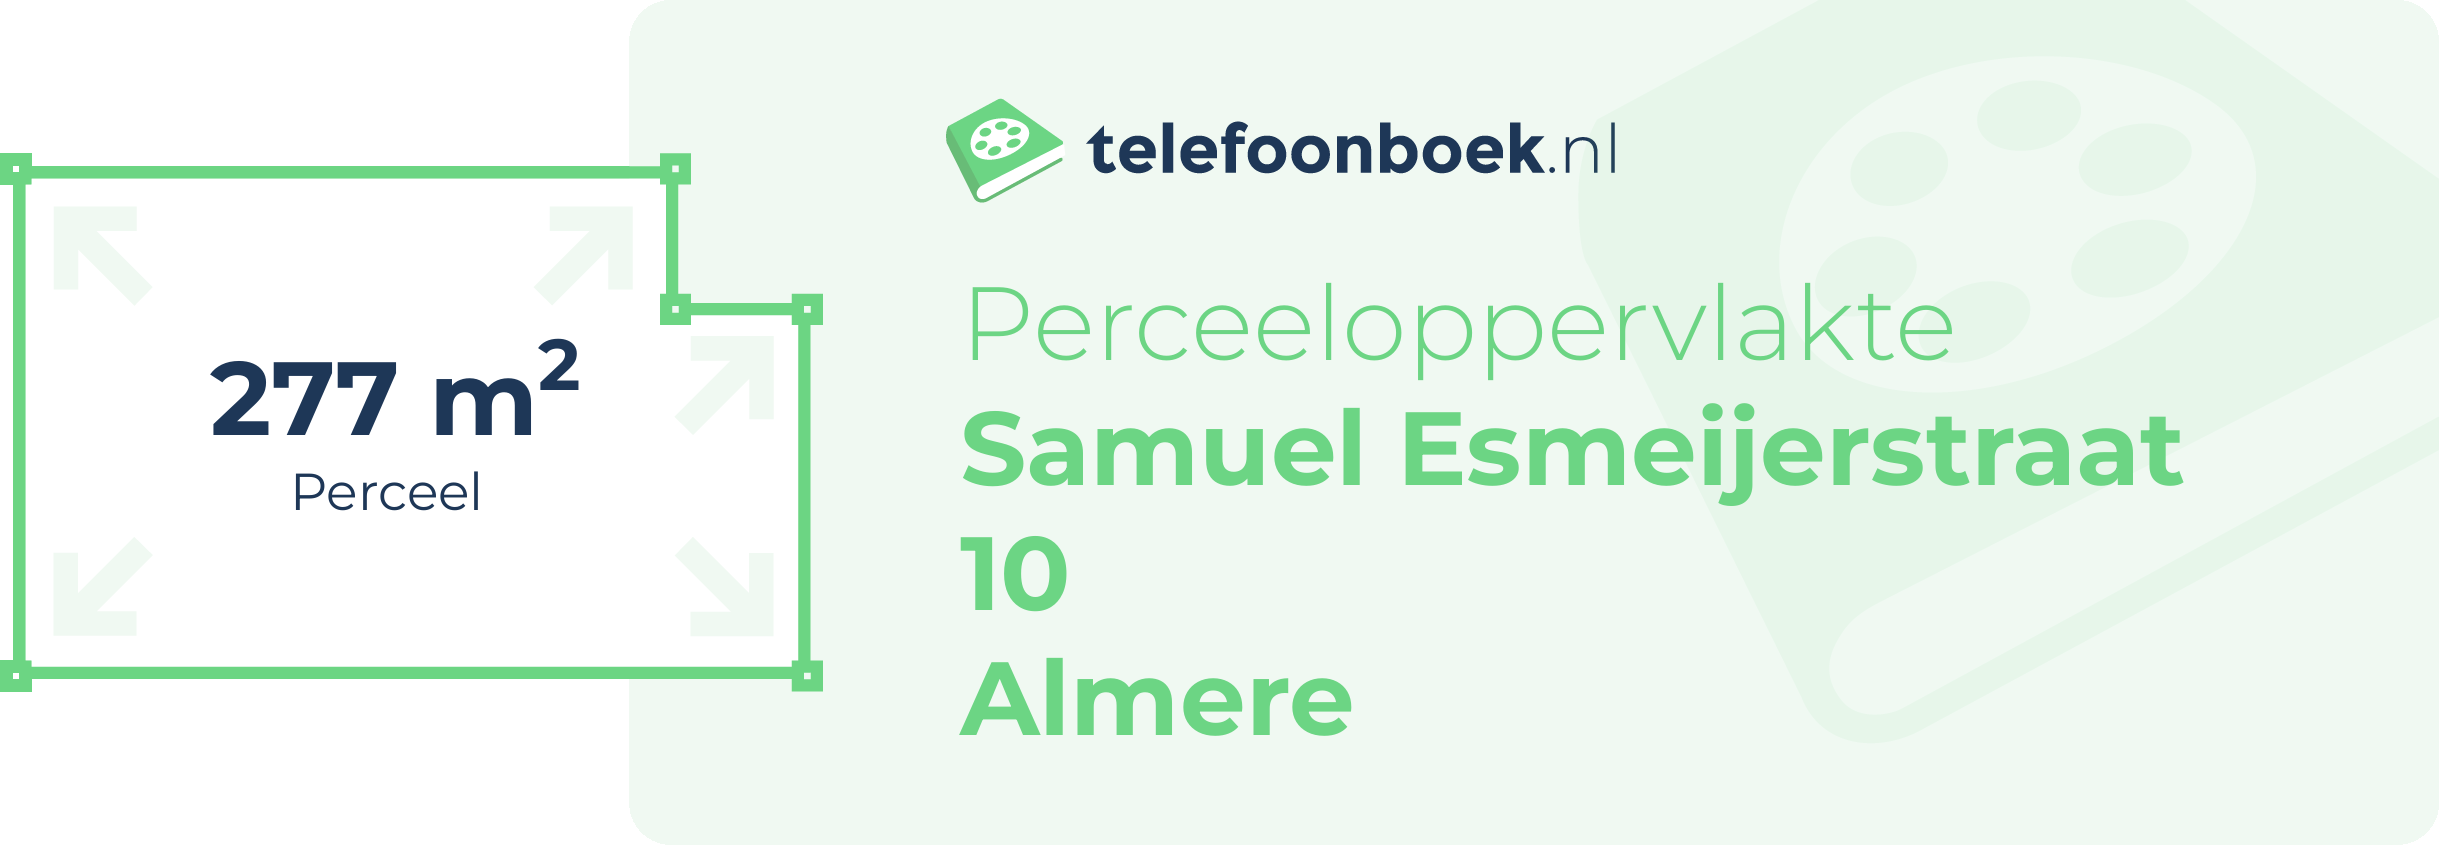 Perceeloppervlakte Samuel Esmeijerstraat 10 Almere